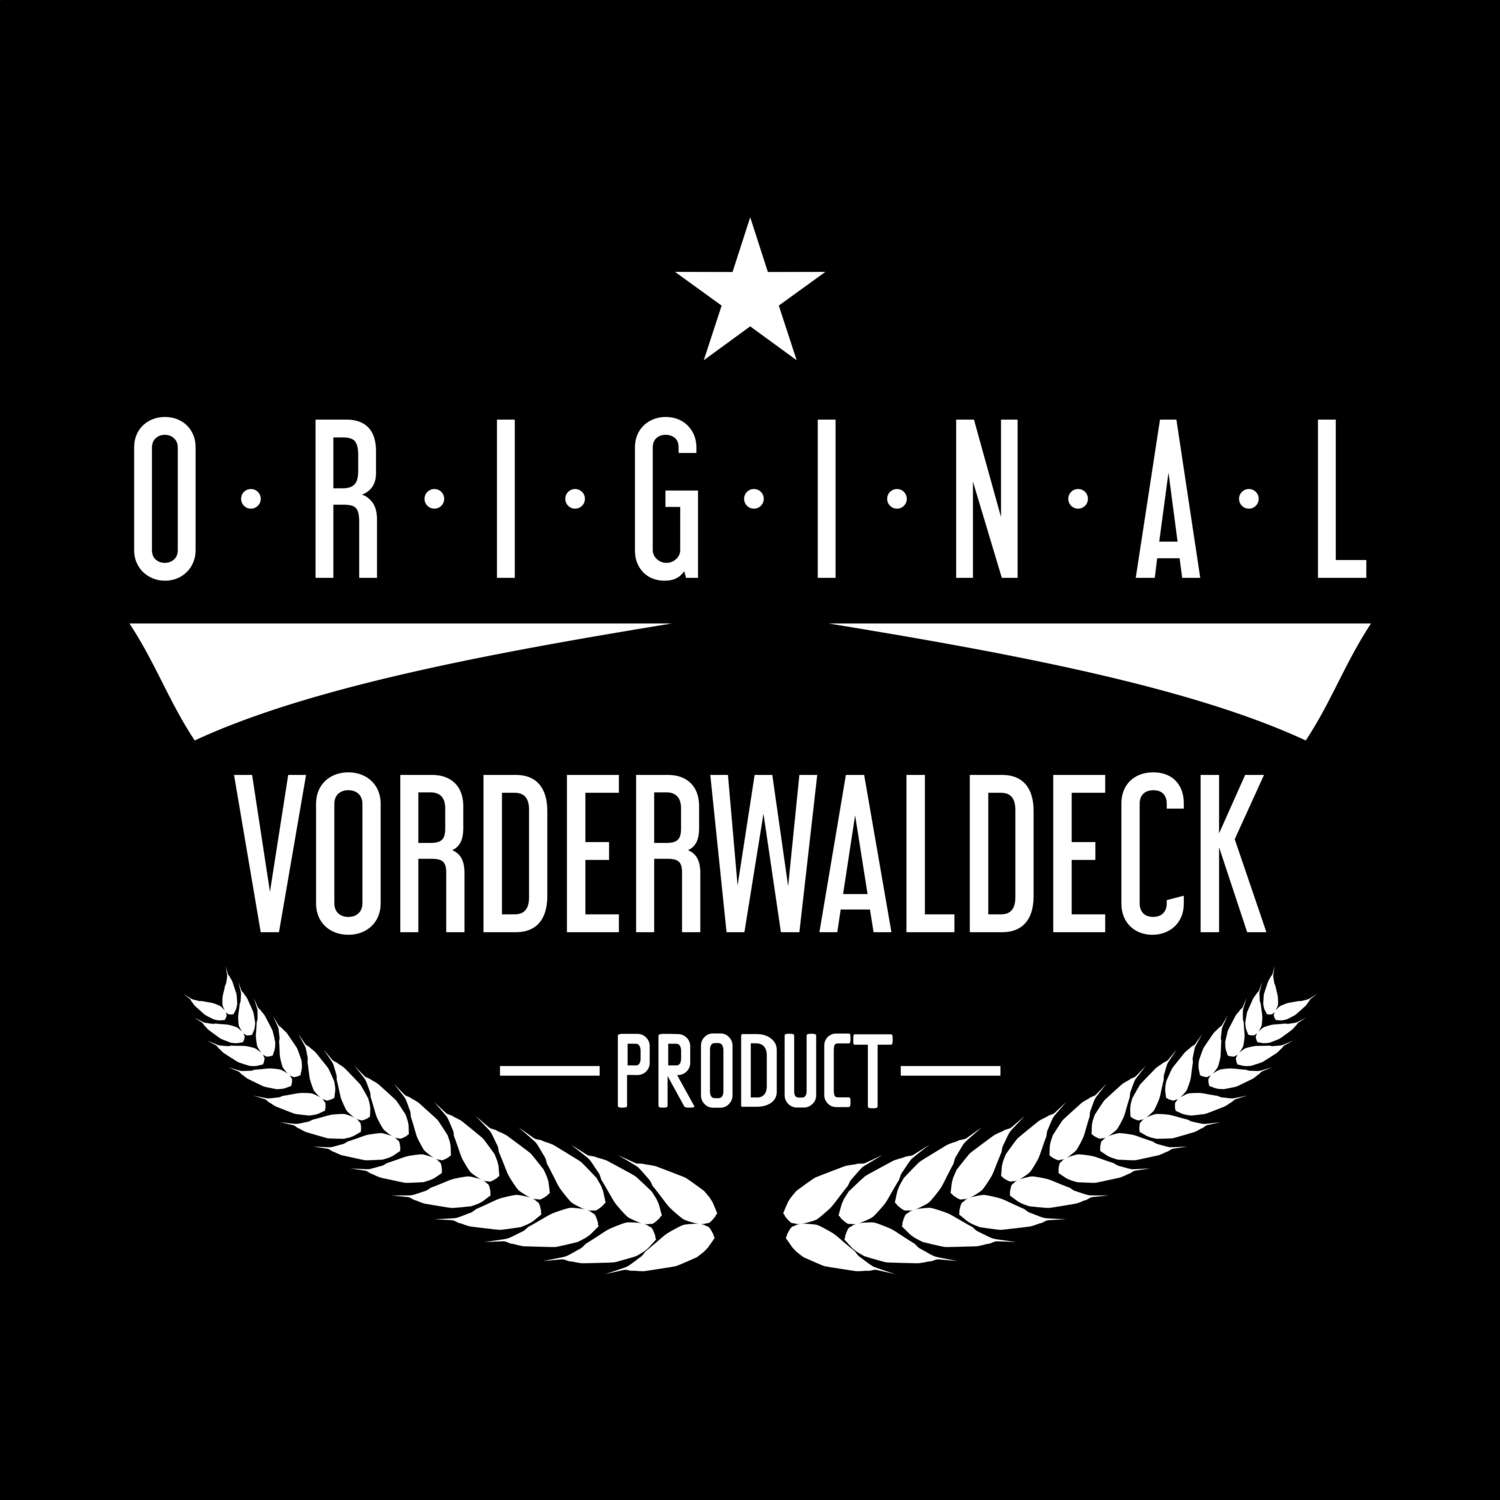 Vorderwaldeck T-Shirt »Original Product«